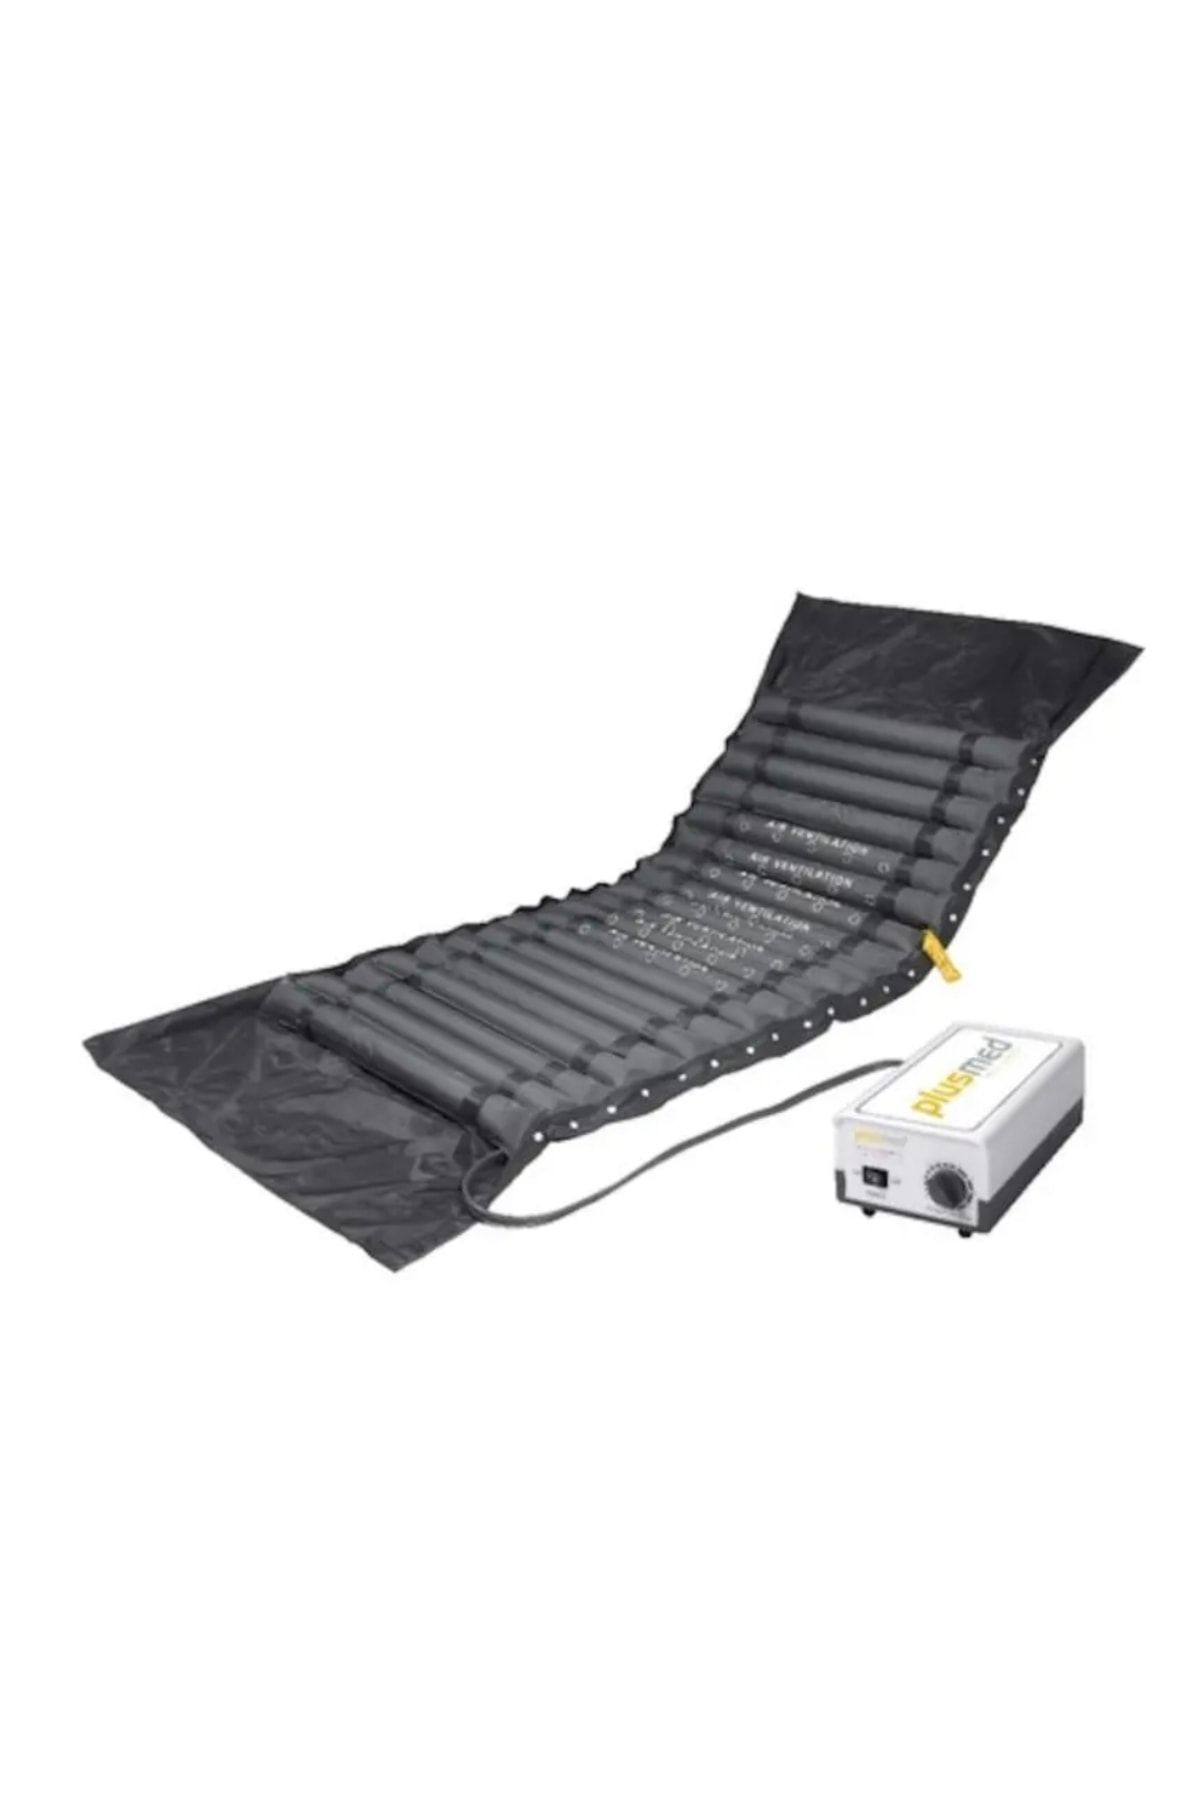 PlusMed Boru Tipi Havalı Yatak Pm-ad 01 Bası Yaralarını Önleyen Havalı Yatak Sistemi